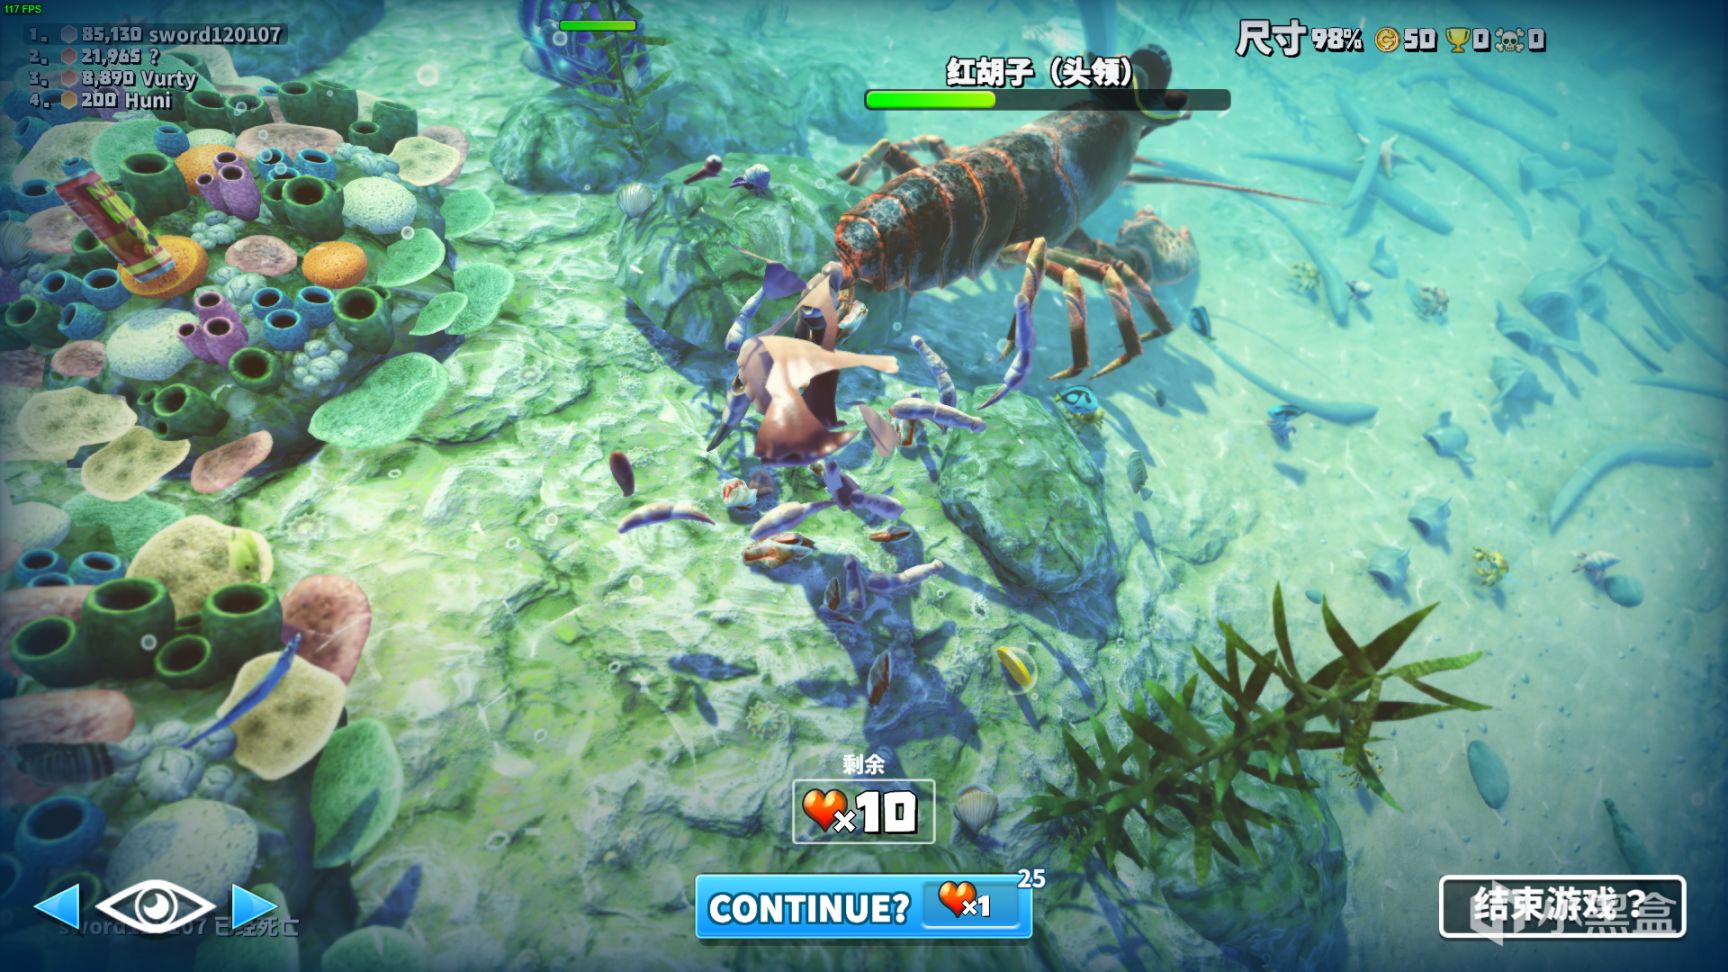 【PC游戏】steam免费有趣游戏《King of Crabs 螃蟹之王》无限欢乐，来吖 一起快乐鸭~-第20张